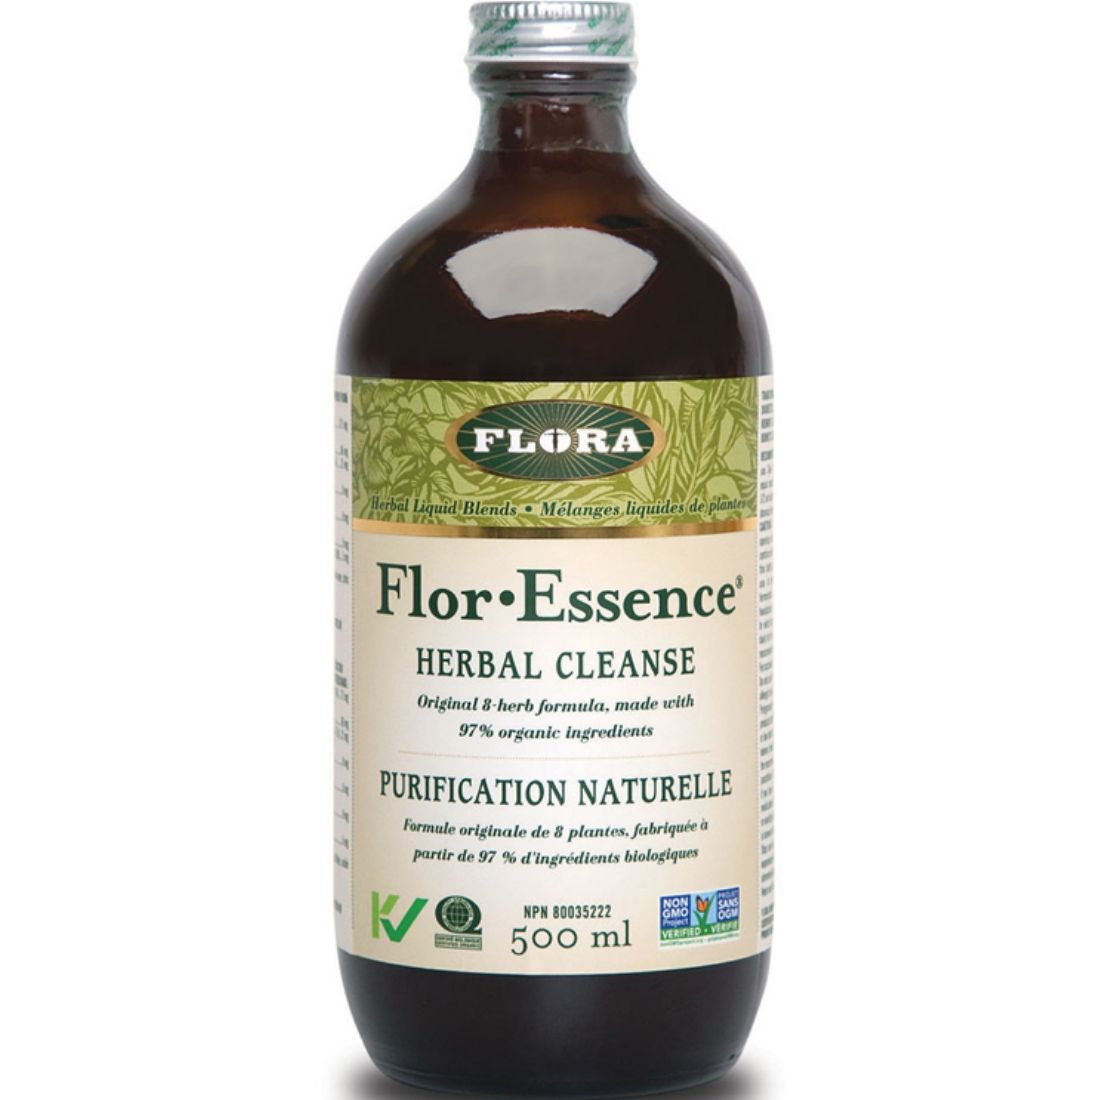 Flora Flor-Essence Herbal Tea Blend Herbal Cleanse Liquid